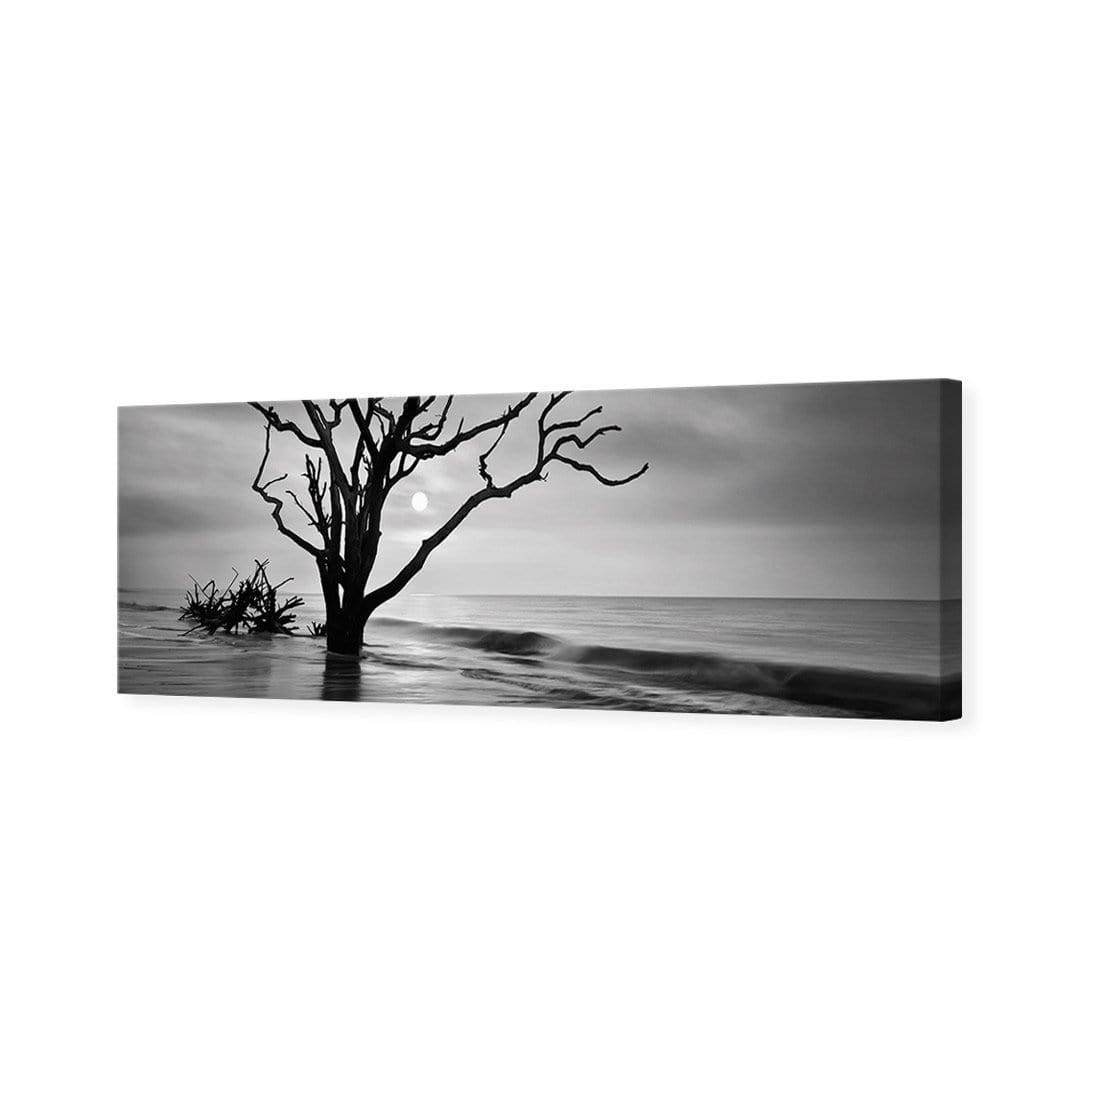 Botany Bay Sunrise, Black and White (Long) - wallart-australia - Canvas